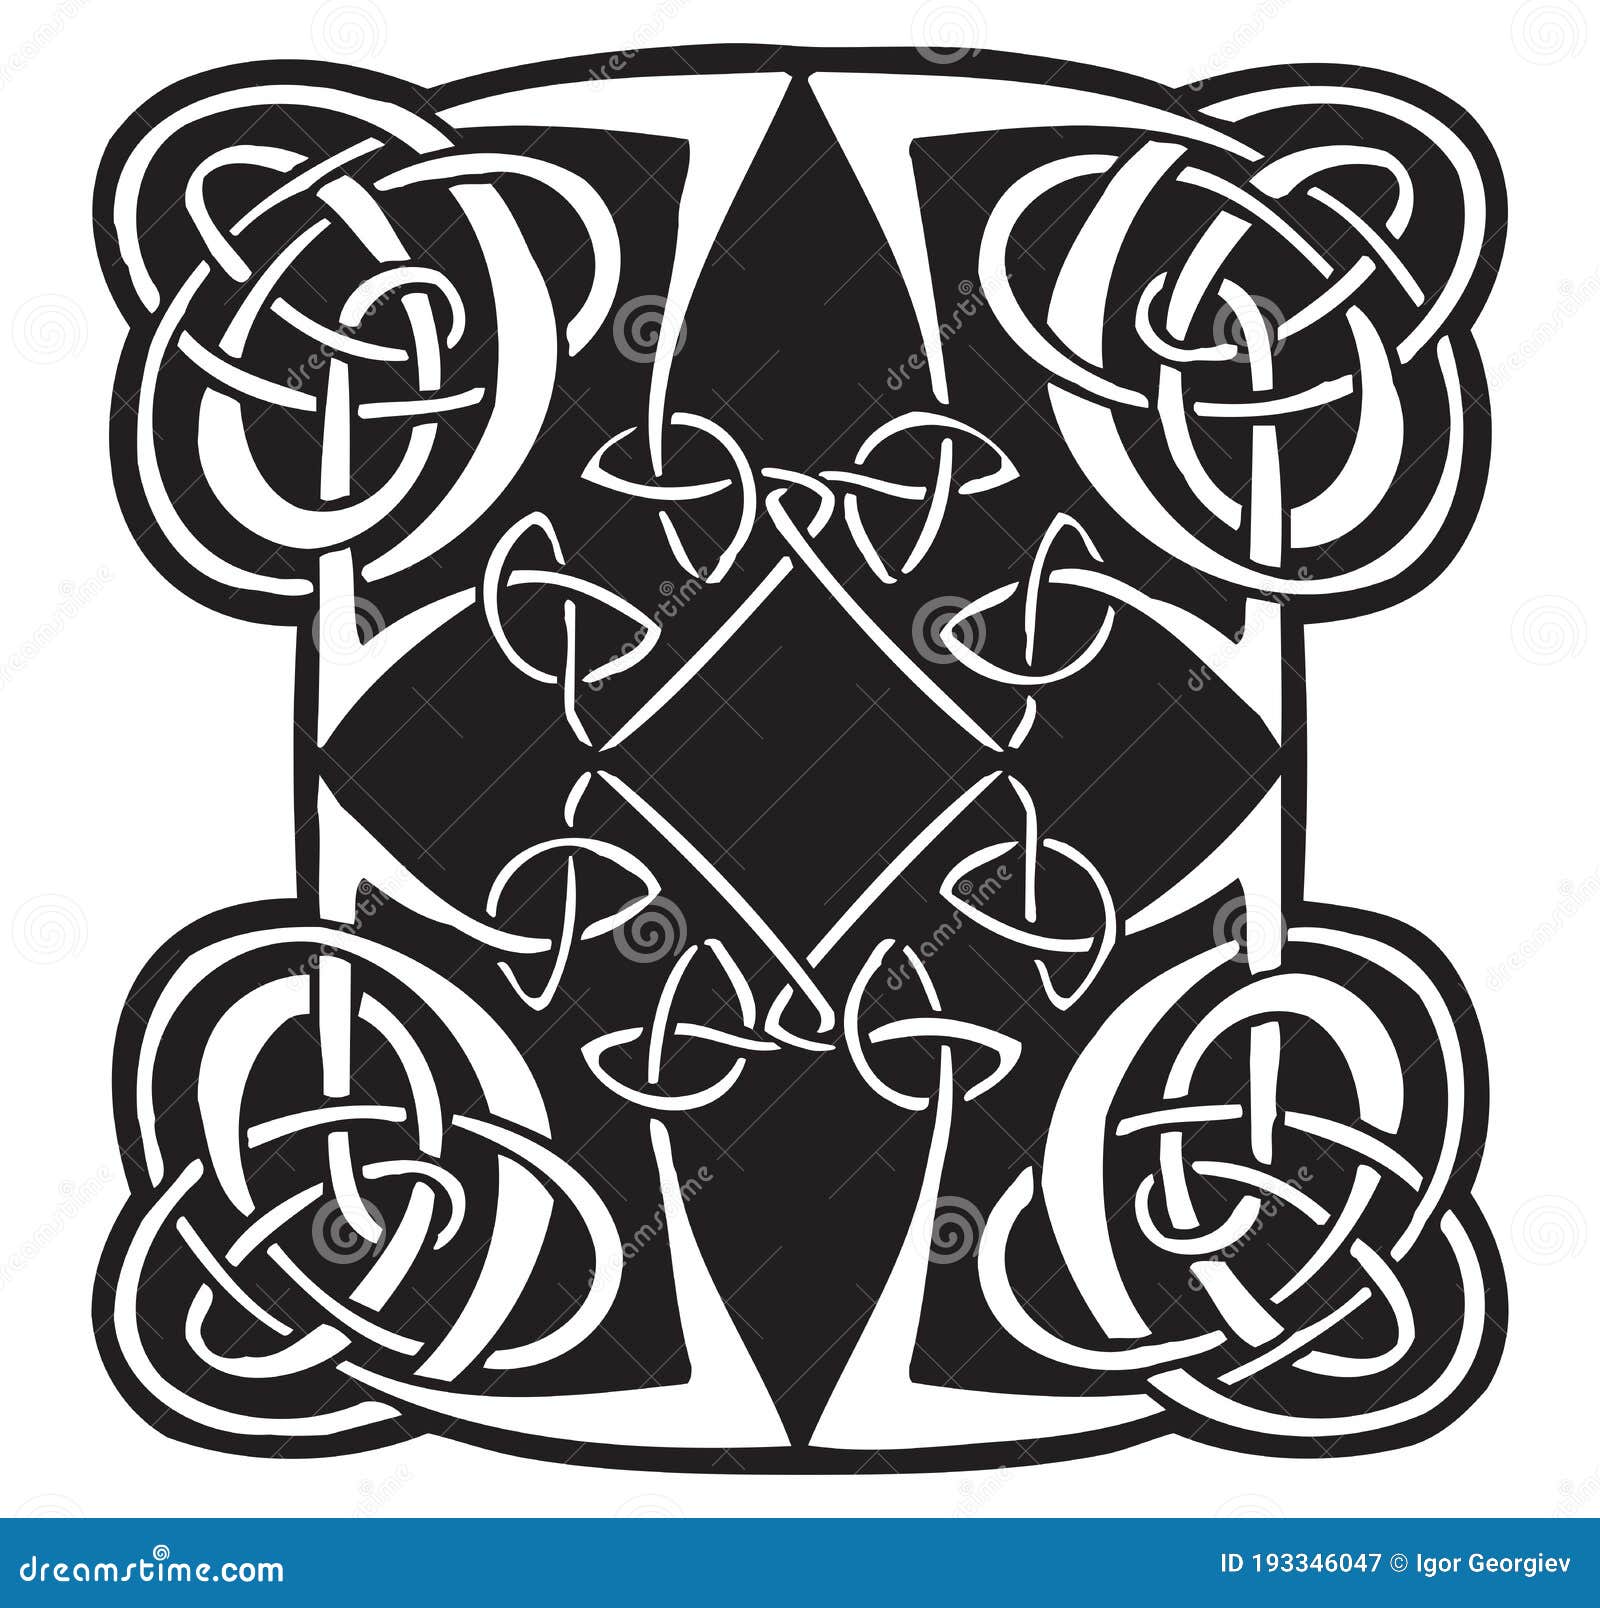 Celtic Spiral Cross Tattoo Flash Stock Vector - Illustration of bird,  celtic: 193346047